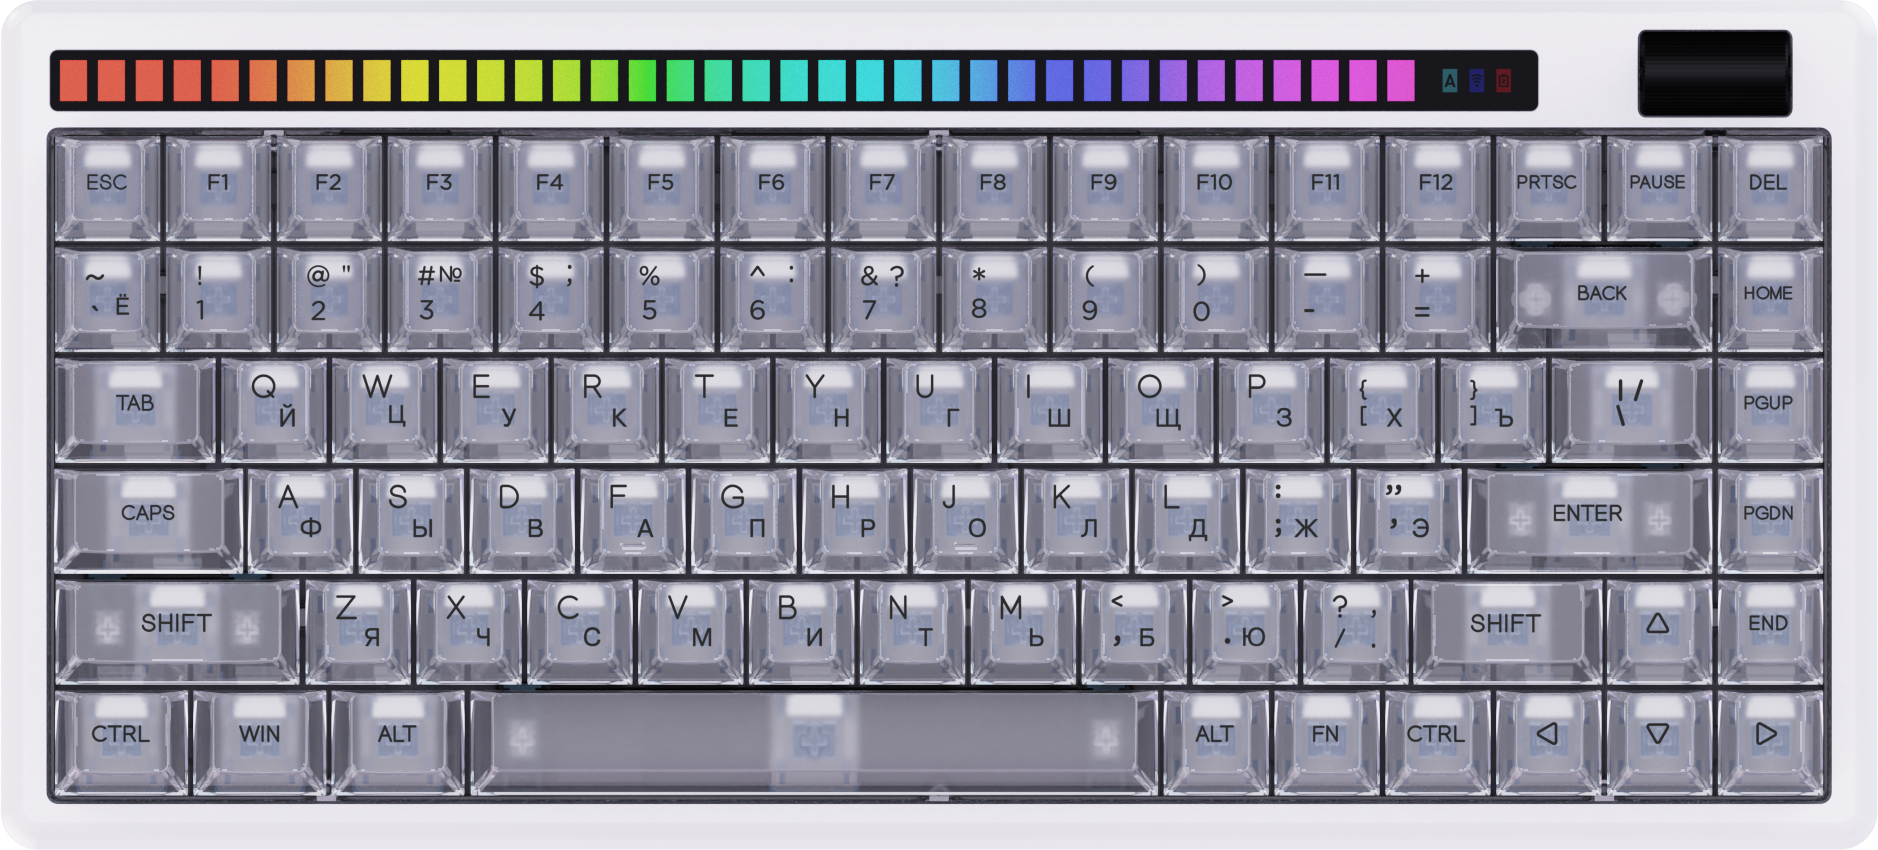 Игровая клавиатура Dareu A84 Pro White